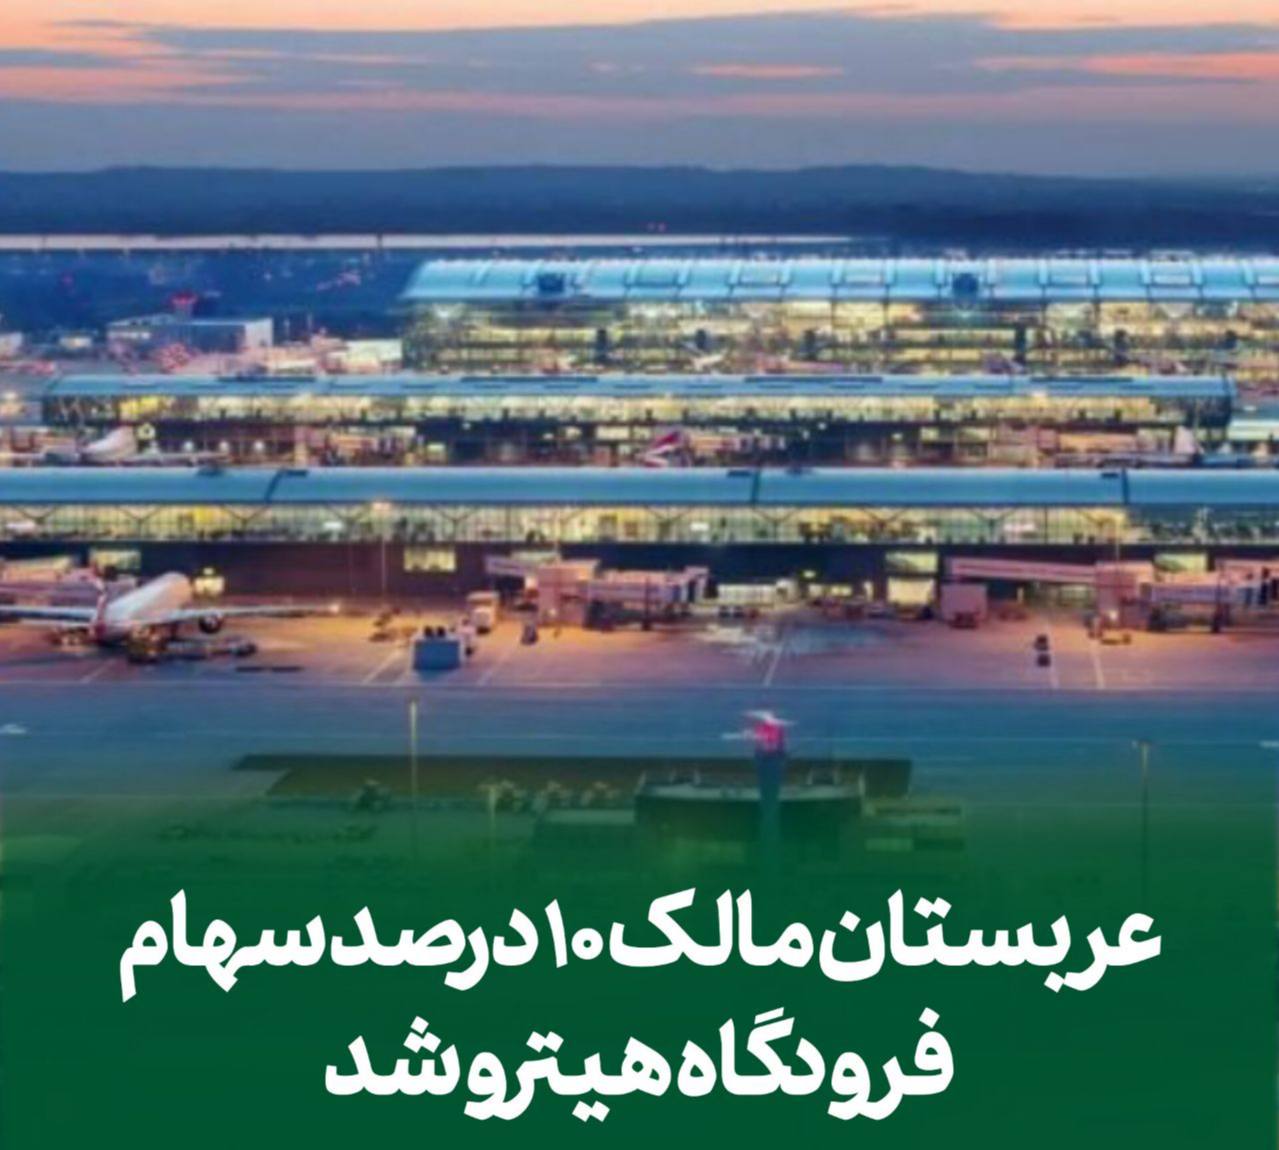 عربستان مالک 10 درصد سهام فرودگاه هیترو شد